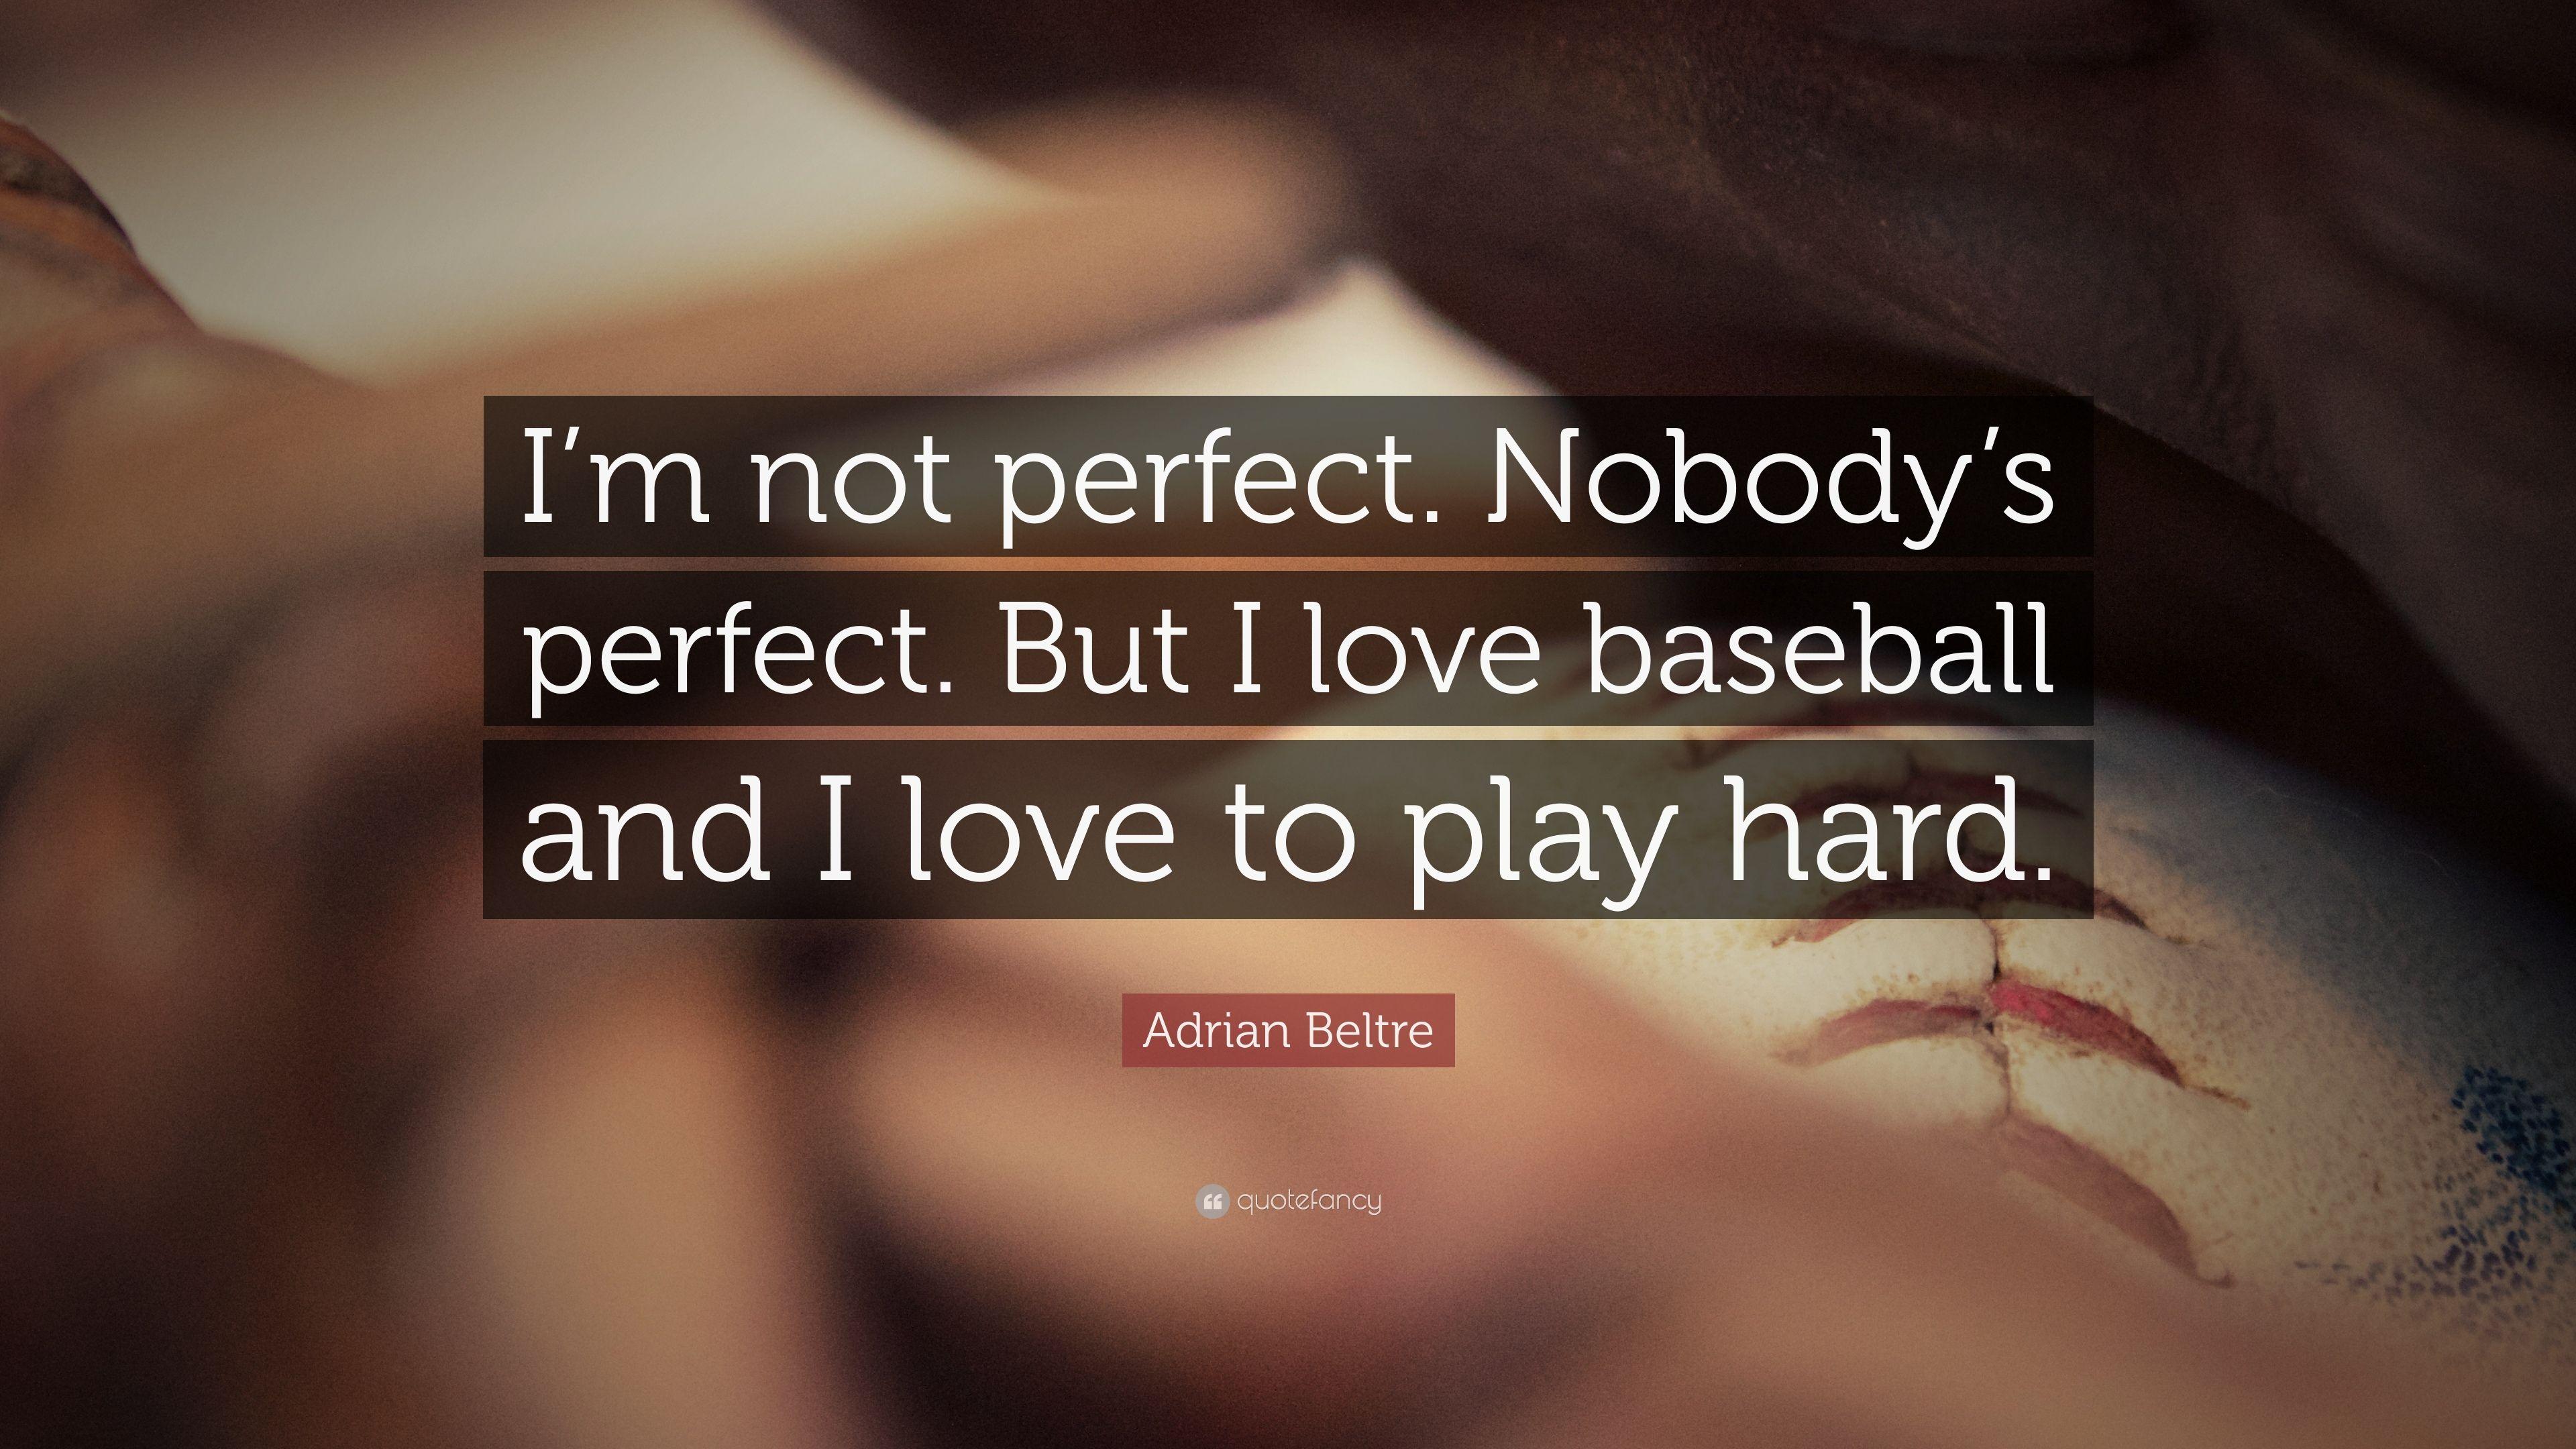 Nobody's perfect. 